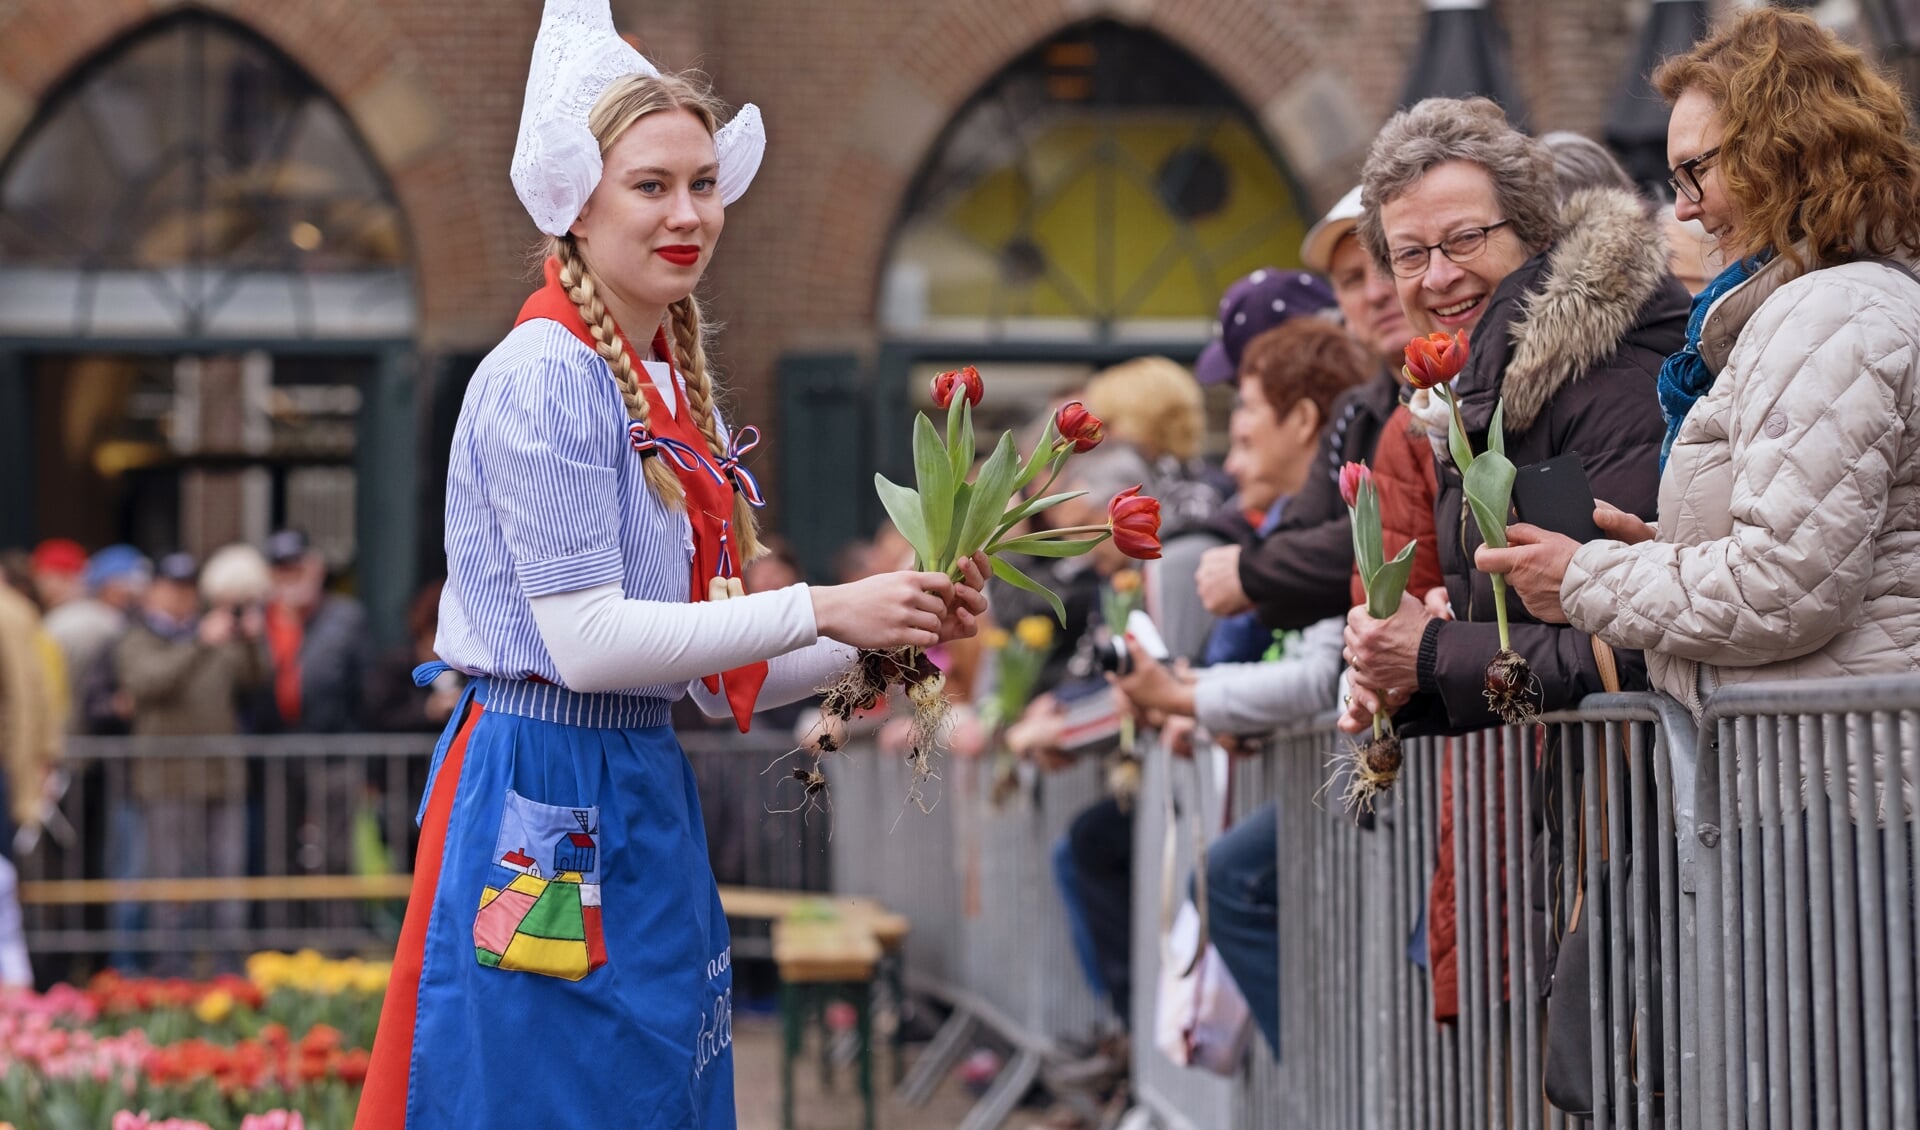 Kaasmeisjes delen tulpen uit aan bezoekers kaasmarkt. (Foto: aangeleverd)